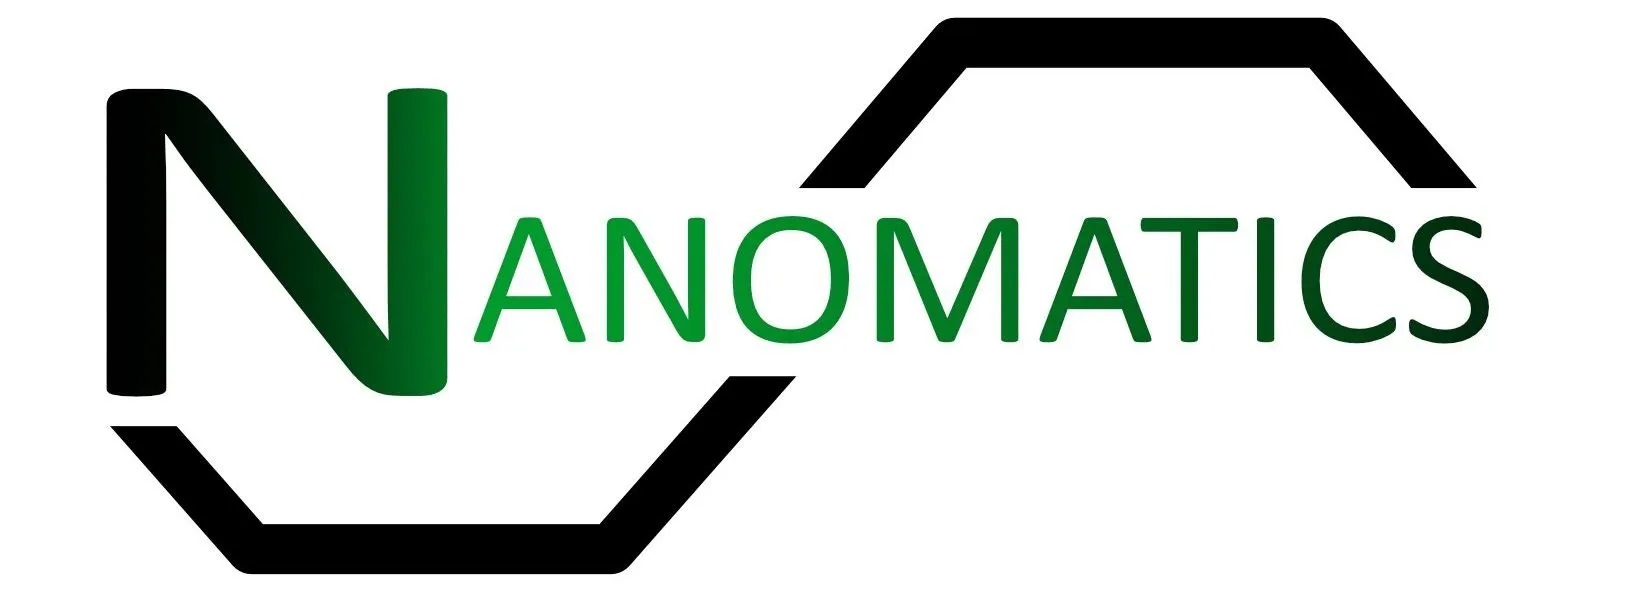 Nanomatics Pte. Ltd. logo